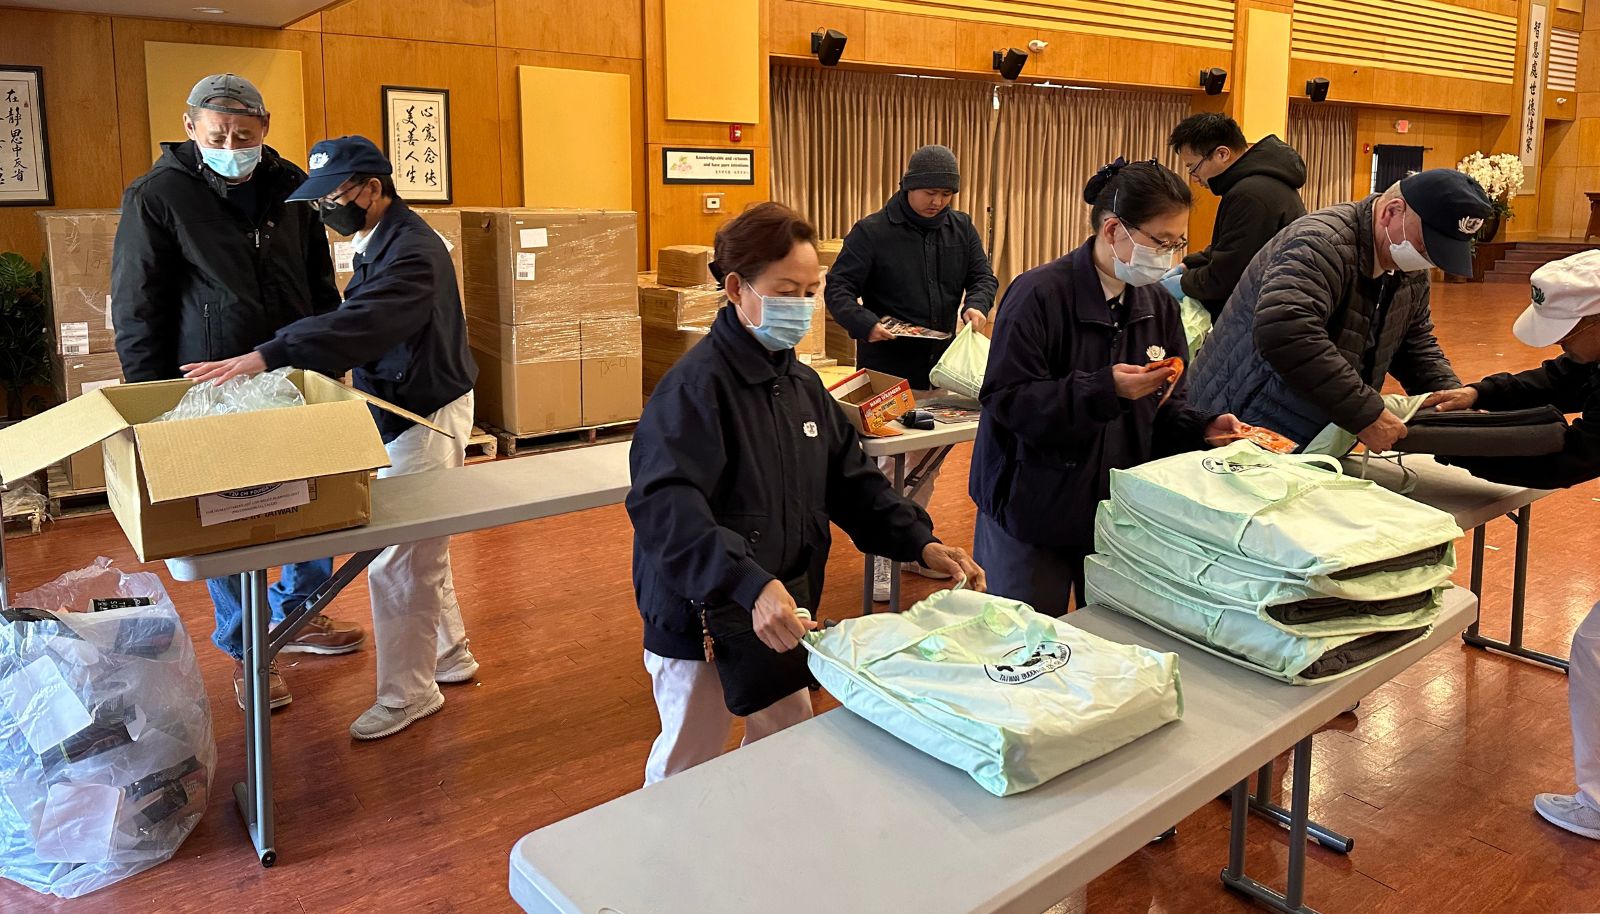 Voluntarios colaboran preparándose para la distribución invernal de mantas. Foto/Eunice Pai